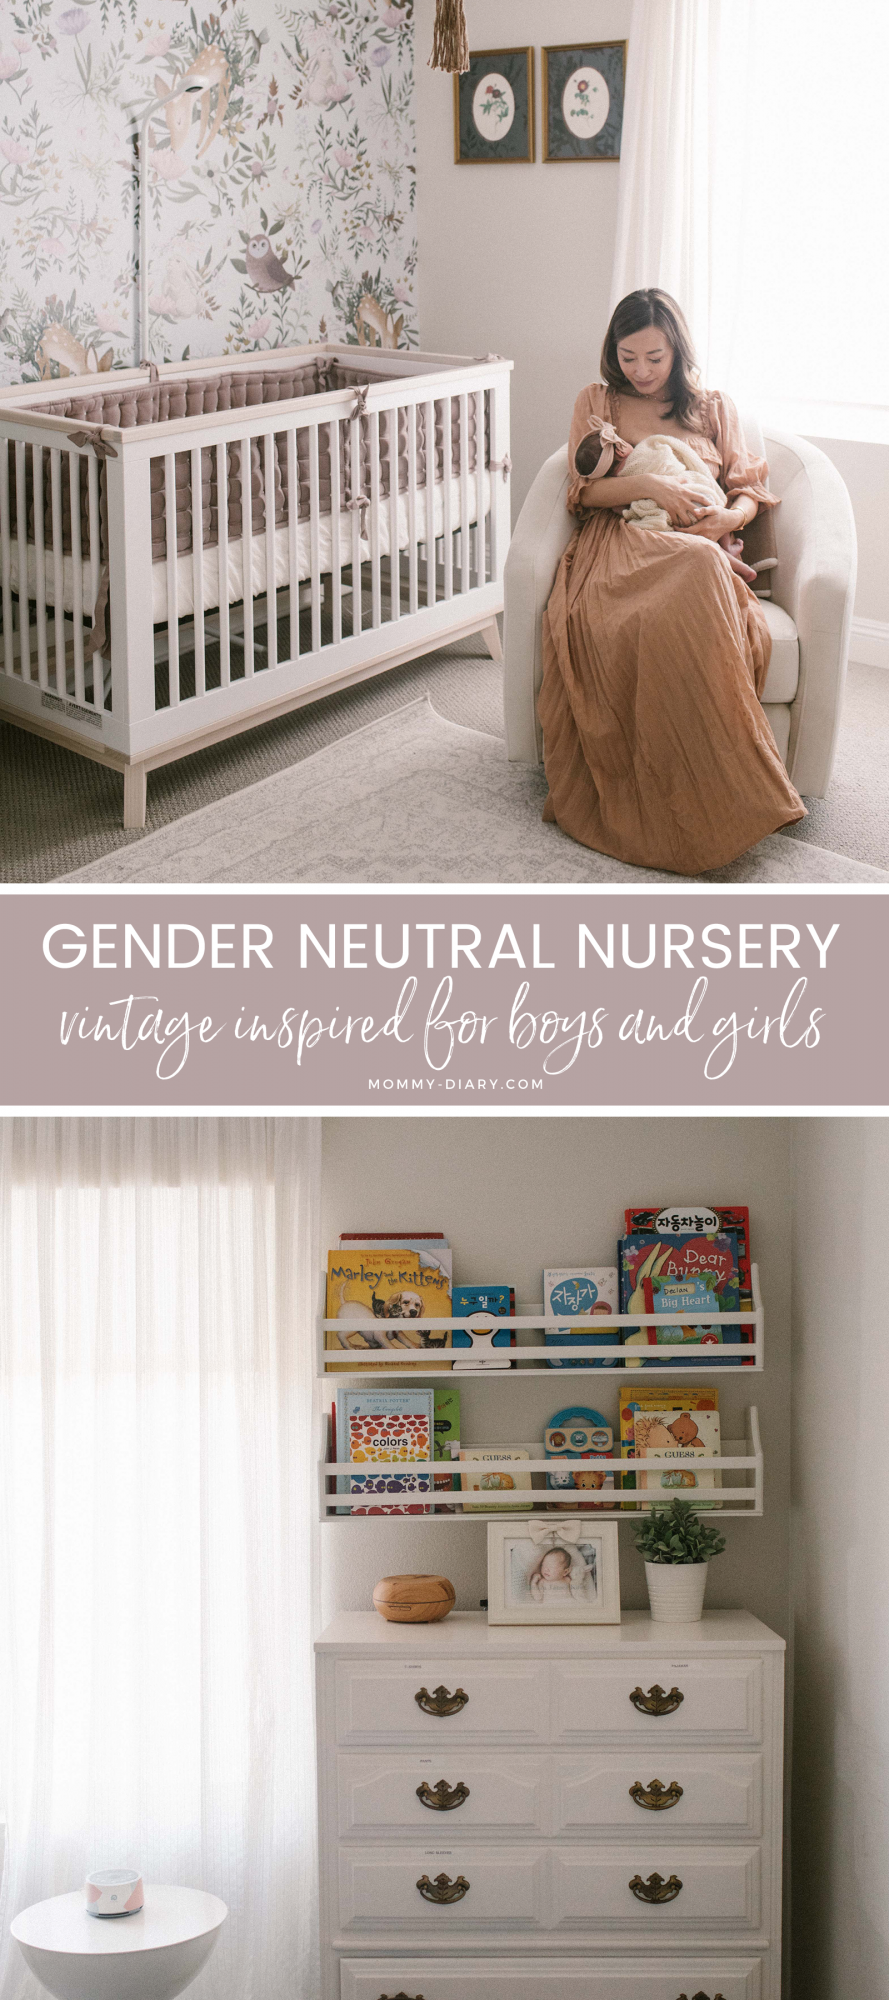 Gender Neutral Vintage Inspired Nursery